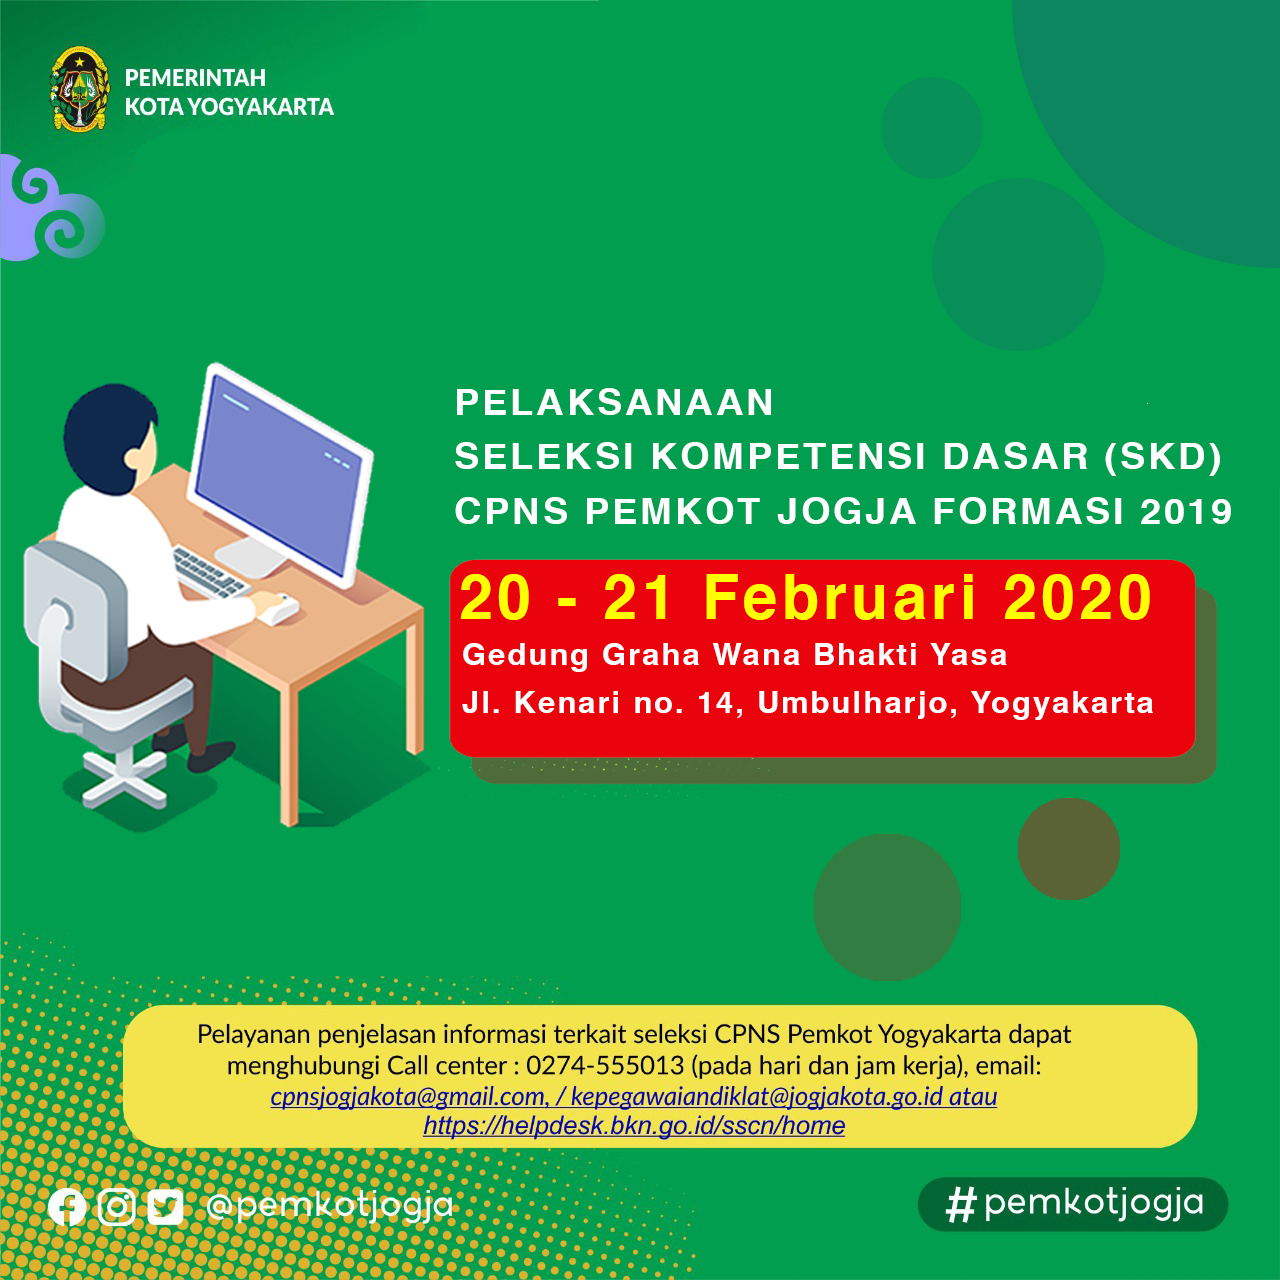 Pelaksanaan Seleksi Kompetensi Dasar CPNS Pemkot Yogyakarta Formasi Tahun 2019